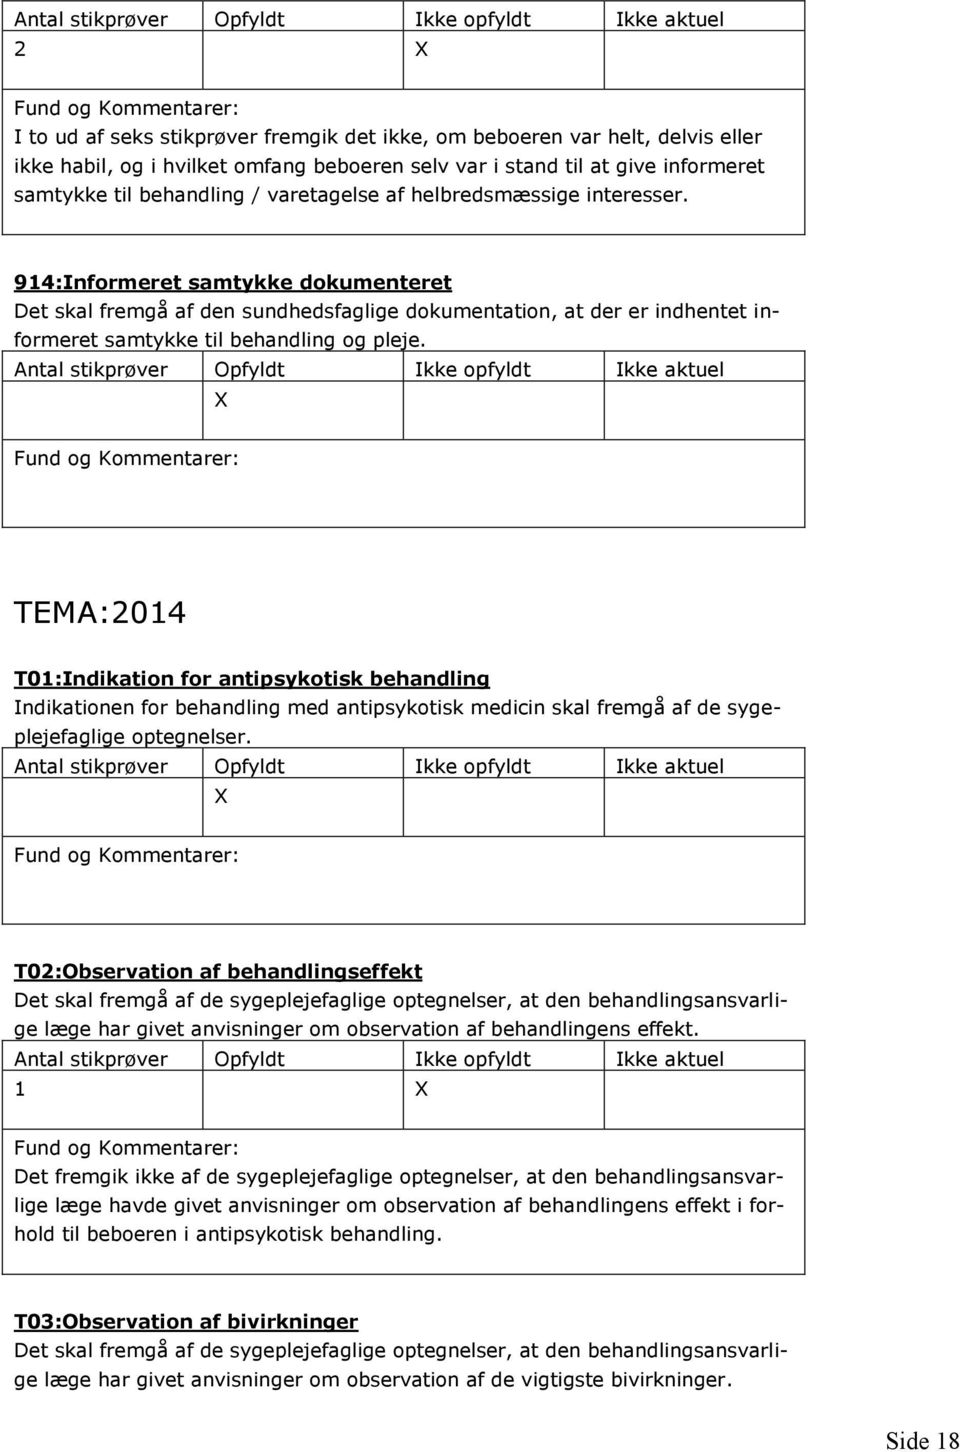 TEMA:2014 T01:Indikation for antipsykotisk behandling Indikationen for behandling med antipsykotisk medicin skal fremgå af de sygeplejefaglige optegnelser.